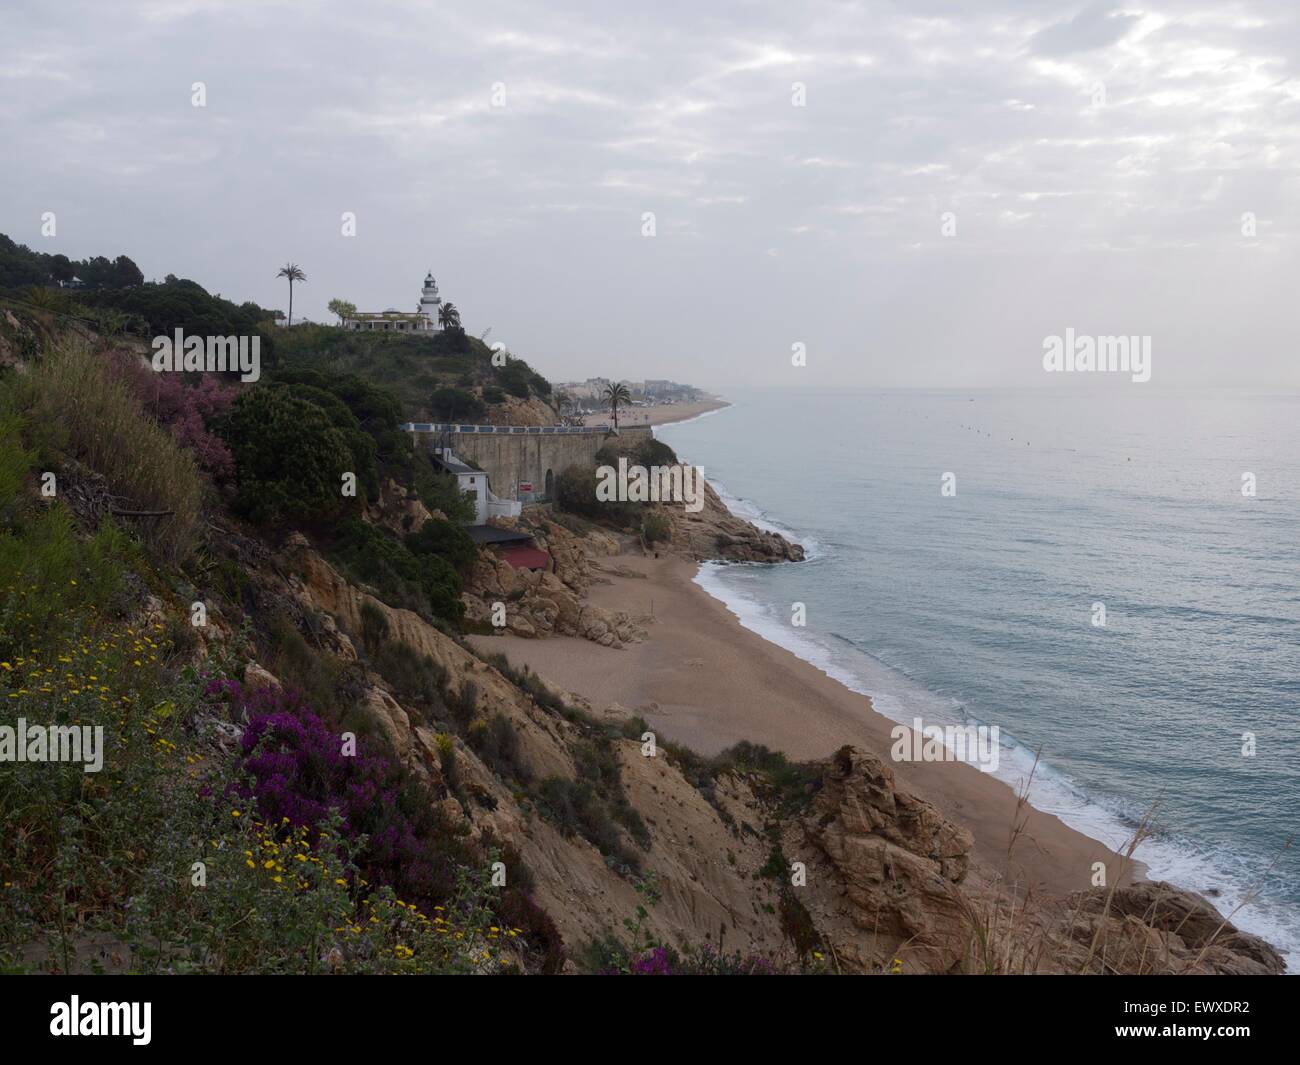 Spiaggia vuota in Spagna in un cupo guardando al giorno con un faro affacciato sulla scogliera Foto Stock